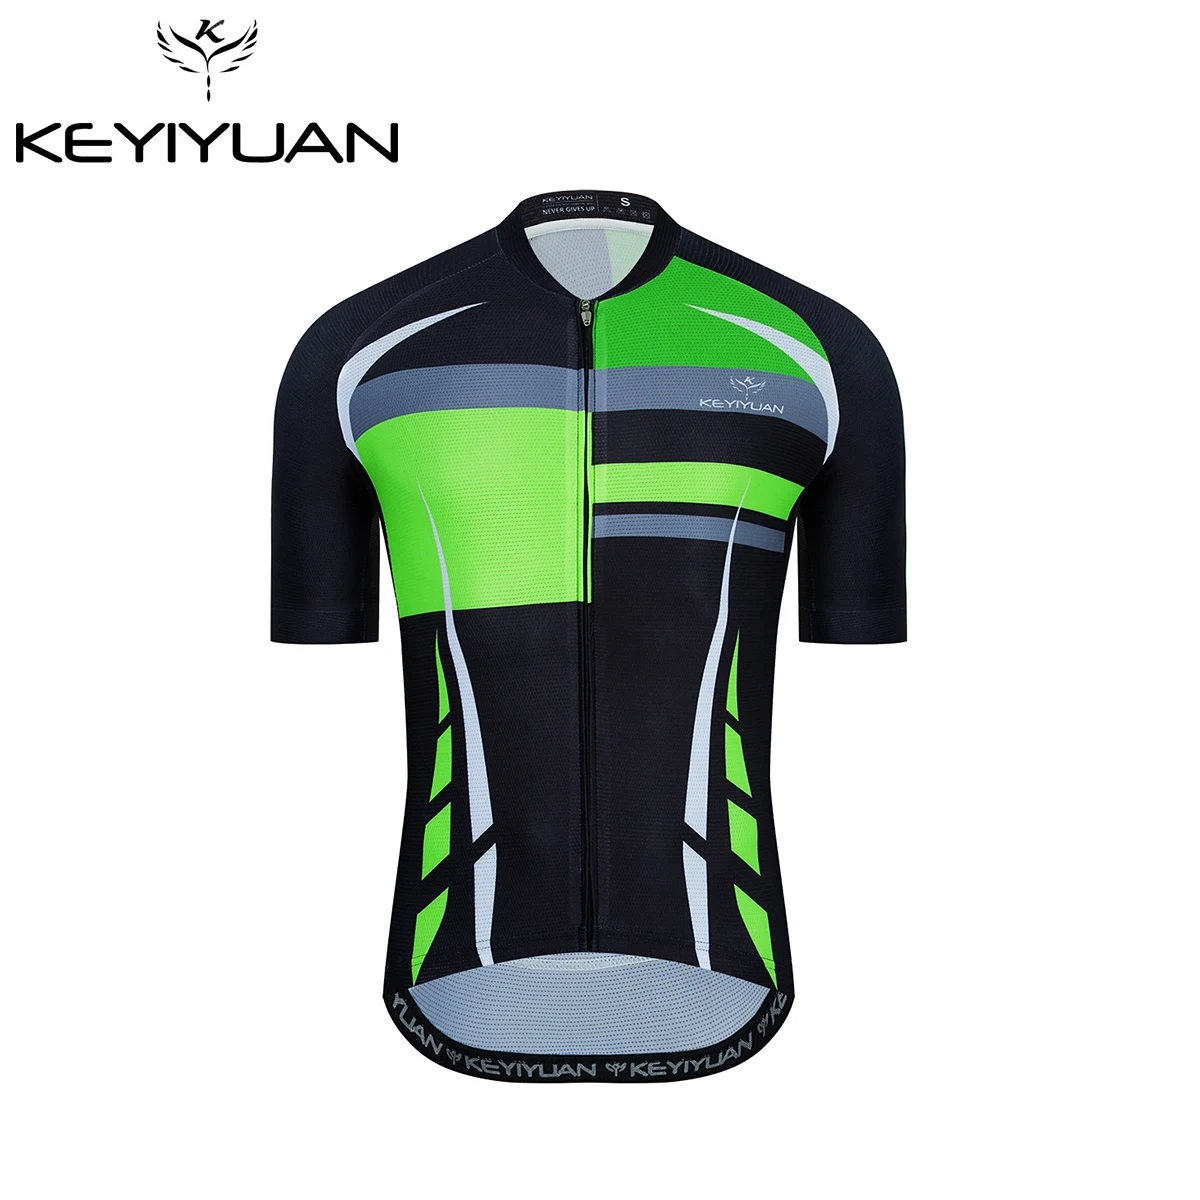 

KEYIYUAN Men Summer Breathable Cycling Shirt Bike Cycling Jersey Short Sleeve Sportswear MTB Maillot Ciclismo Camisas Ciclista